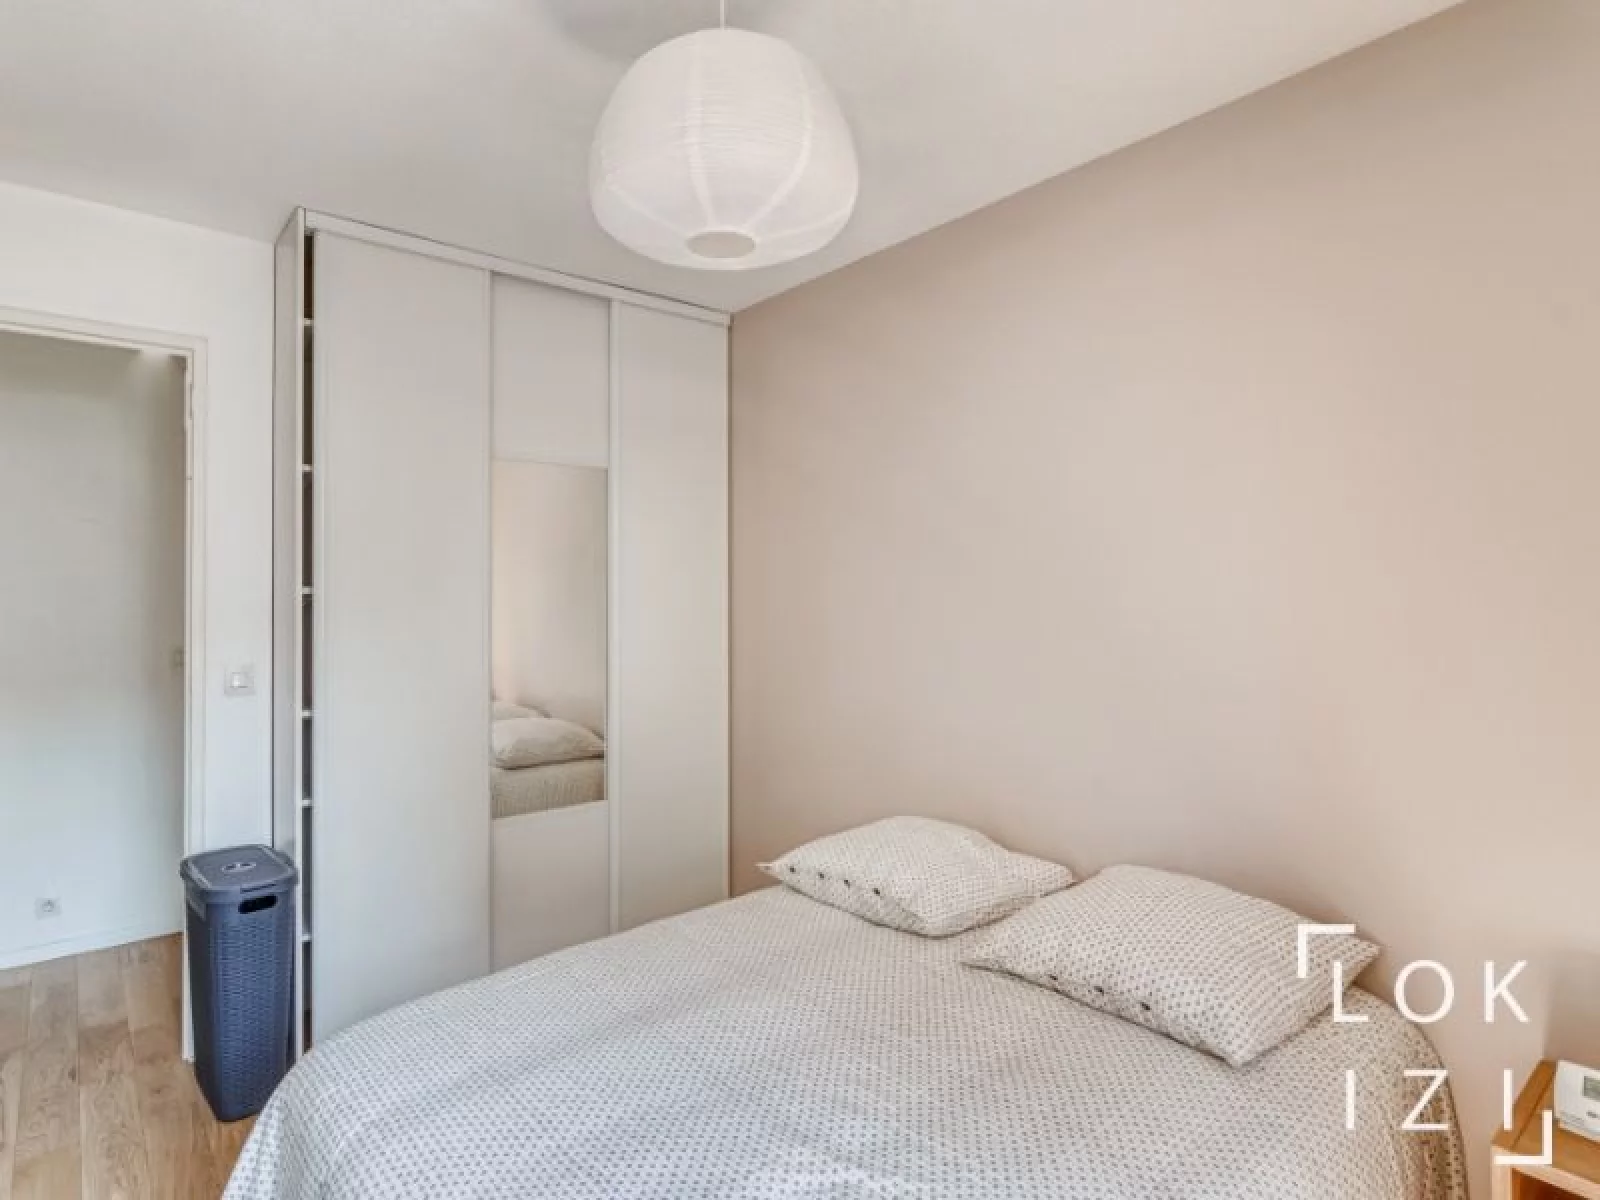 Location appartement meublé 2 pièces 47m² (Paris - St Ouen 93)